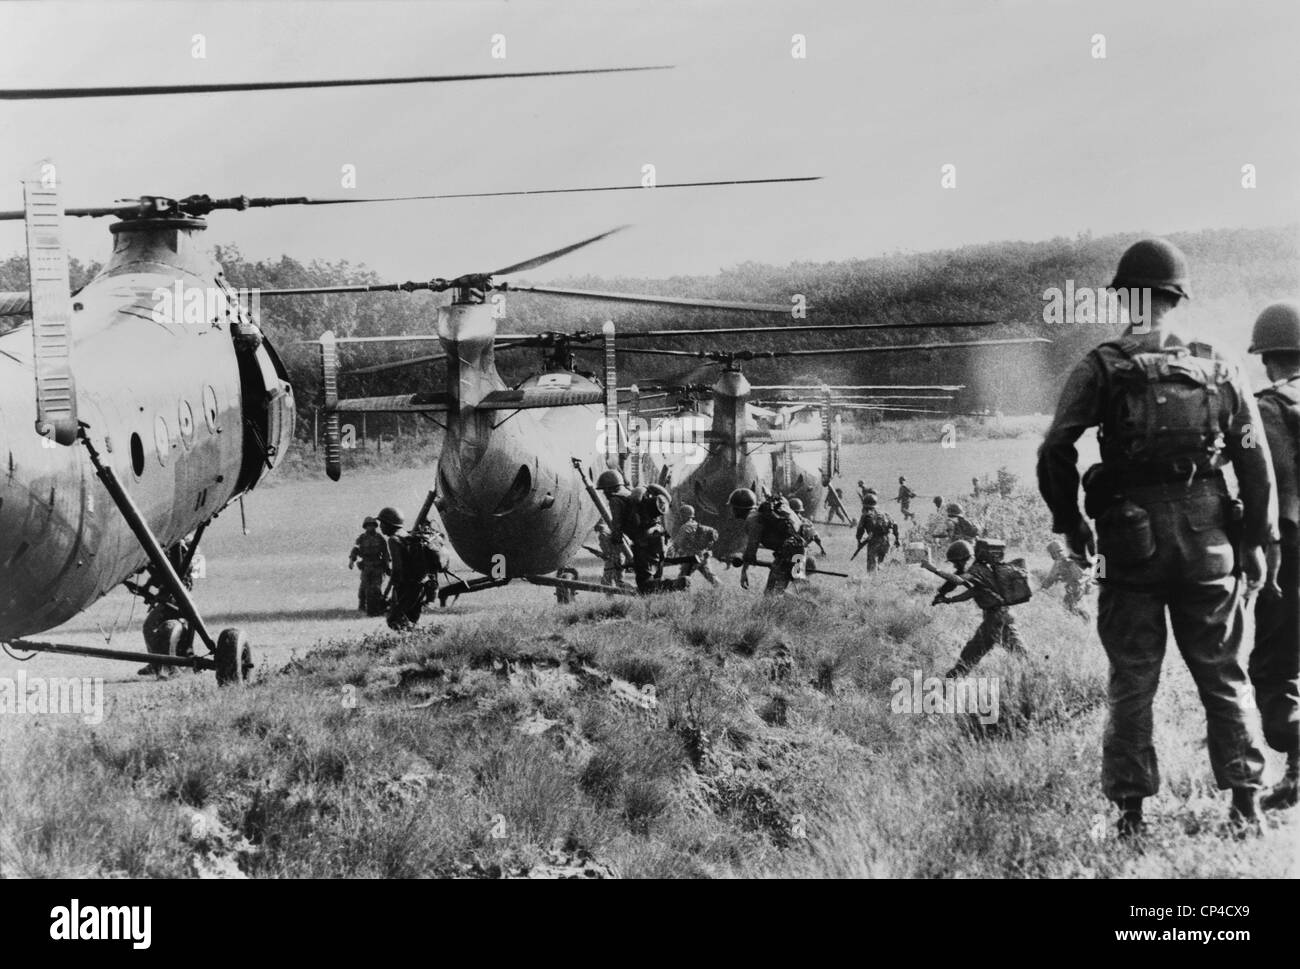 Guerra del Vietnam. Sud soldati vietnamiti correre a bordo di elicotteri per un airborne anti-operazione di guerriglia nella giungla vicino a Saigon, Foto Stock